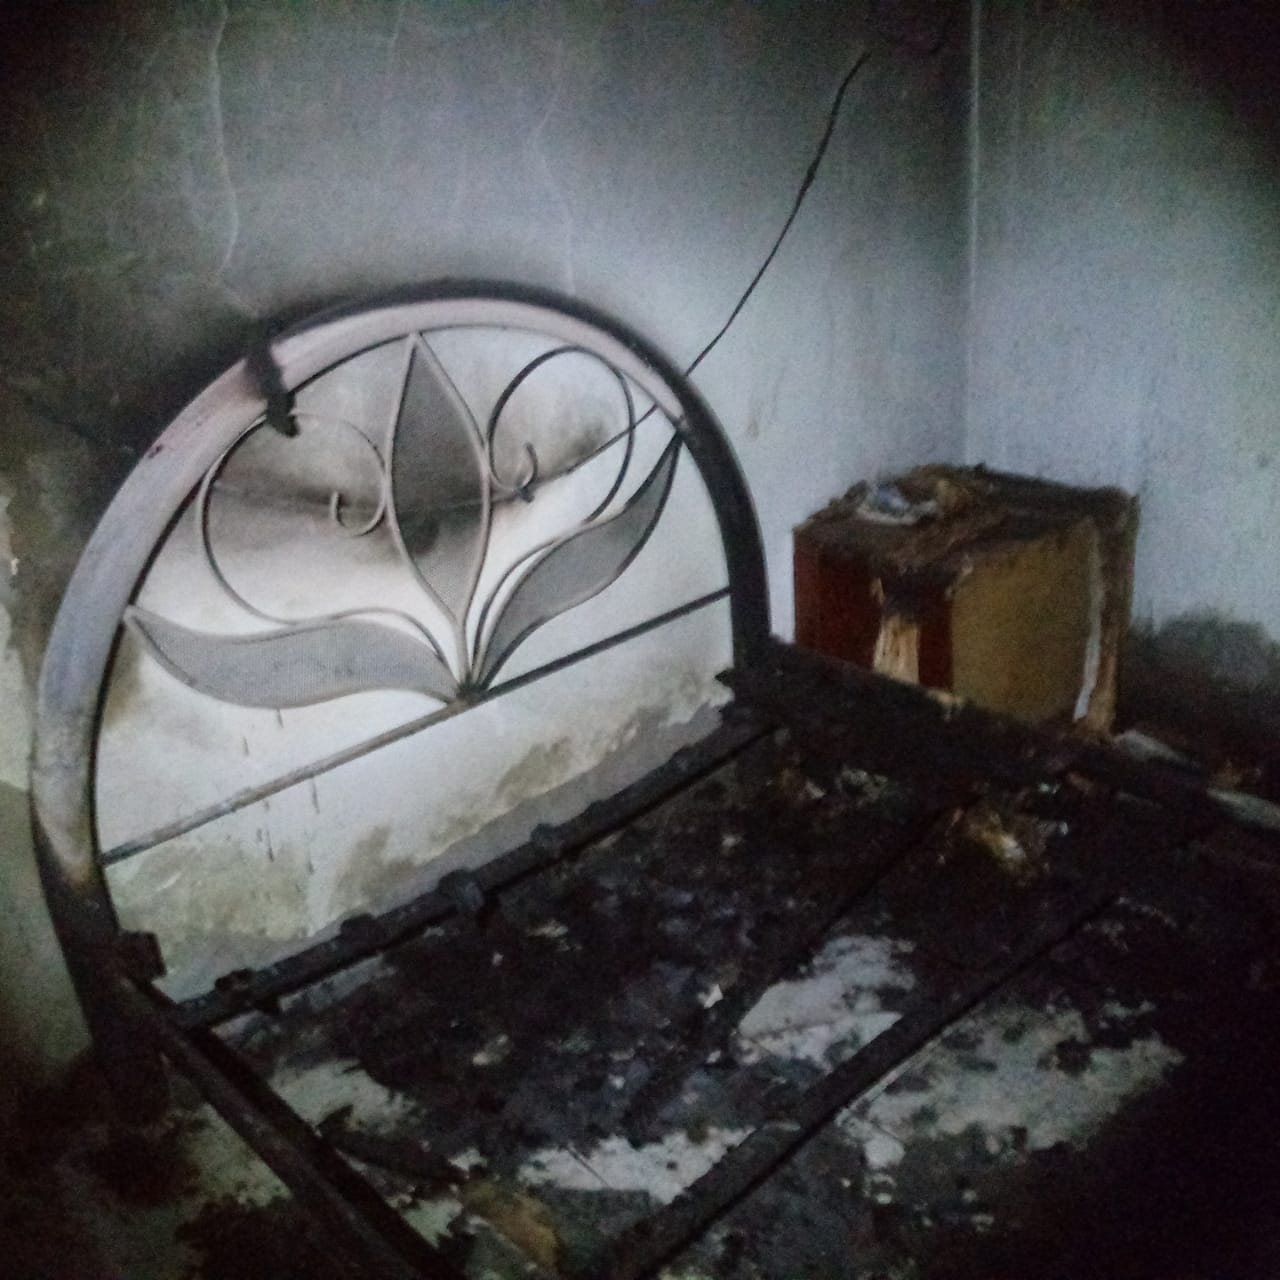 Polícia Militar - Incêndio queimou quatro cômodos da residência em Nova Guataporanga